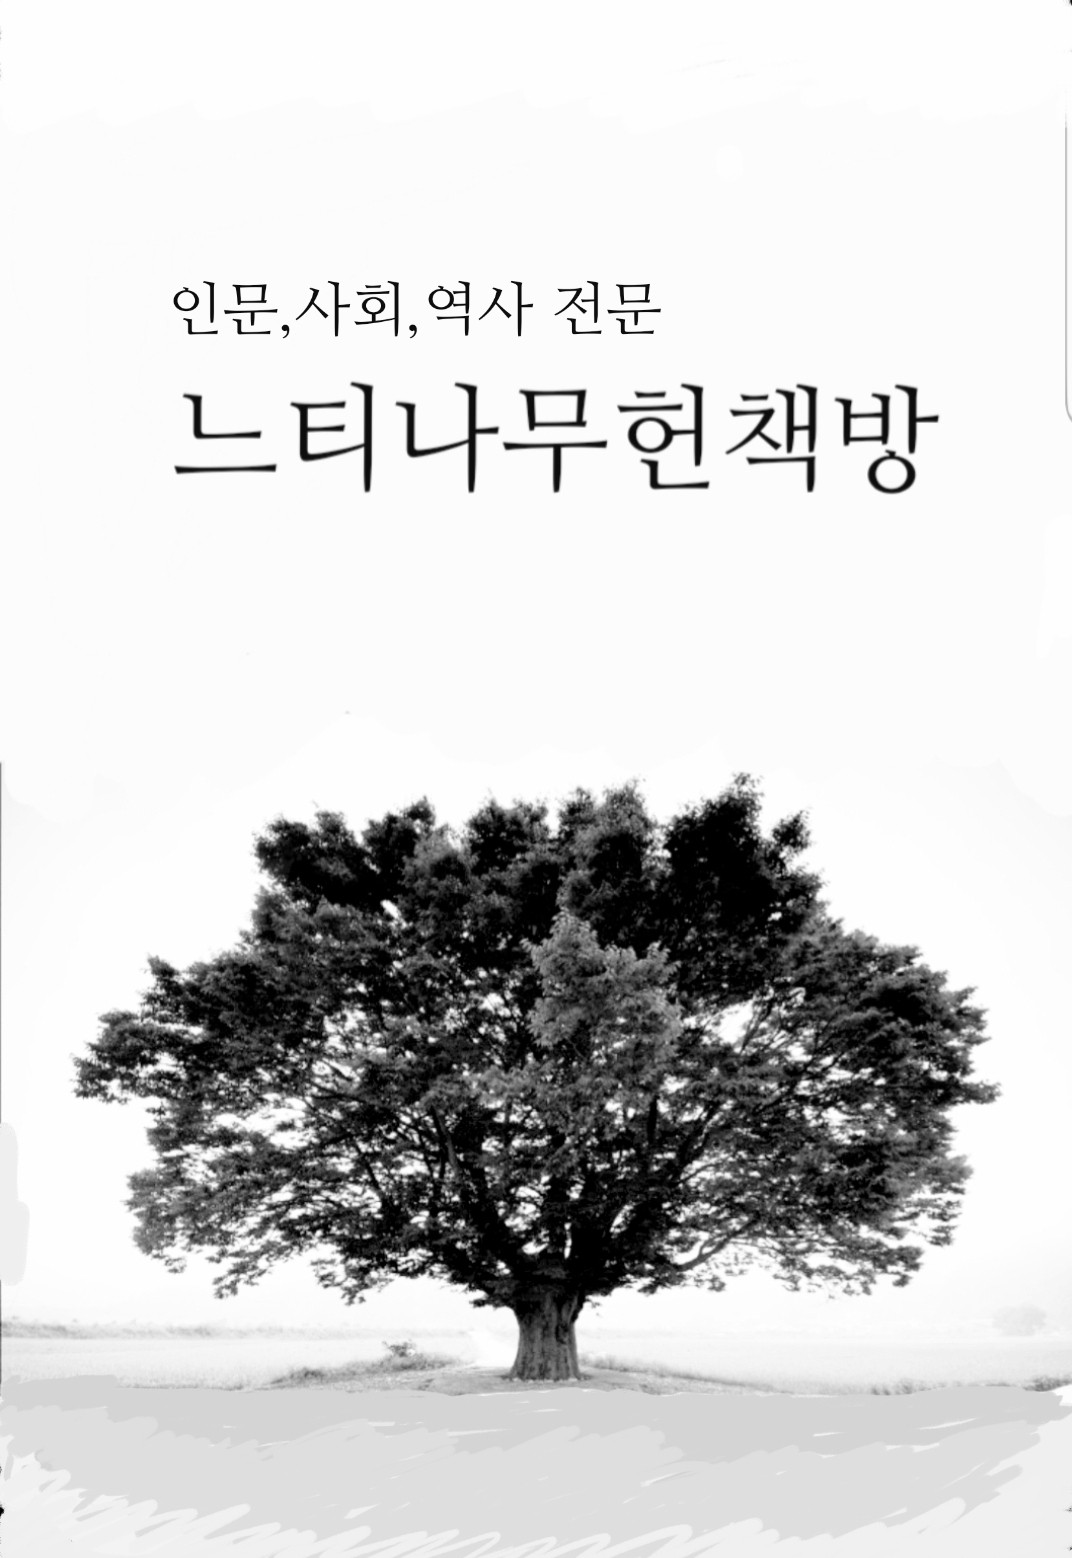 3.1운동 대한민국임시정부수립 100주년 - 향토와문화 90 (알특6코너) 